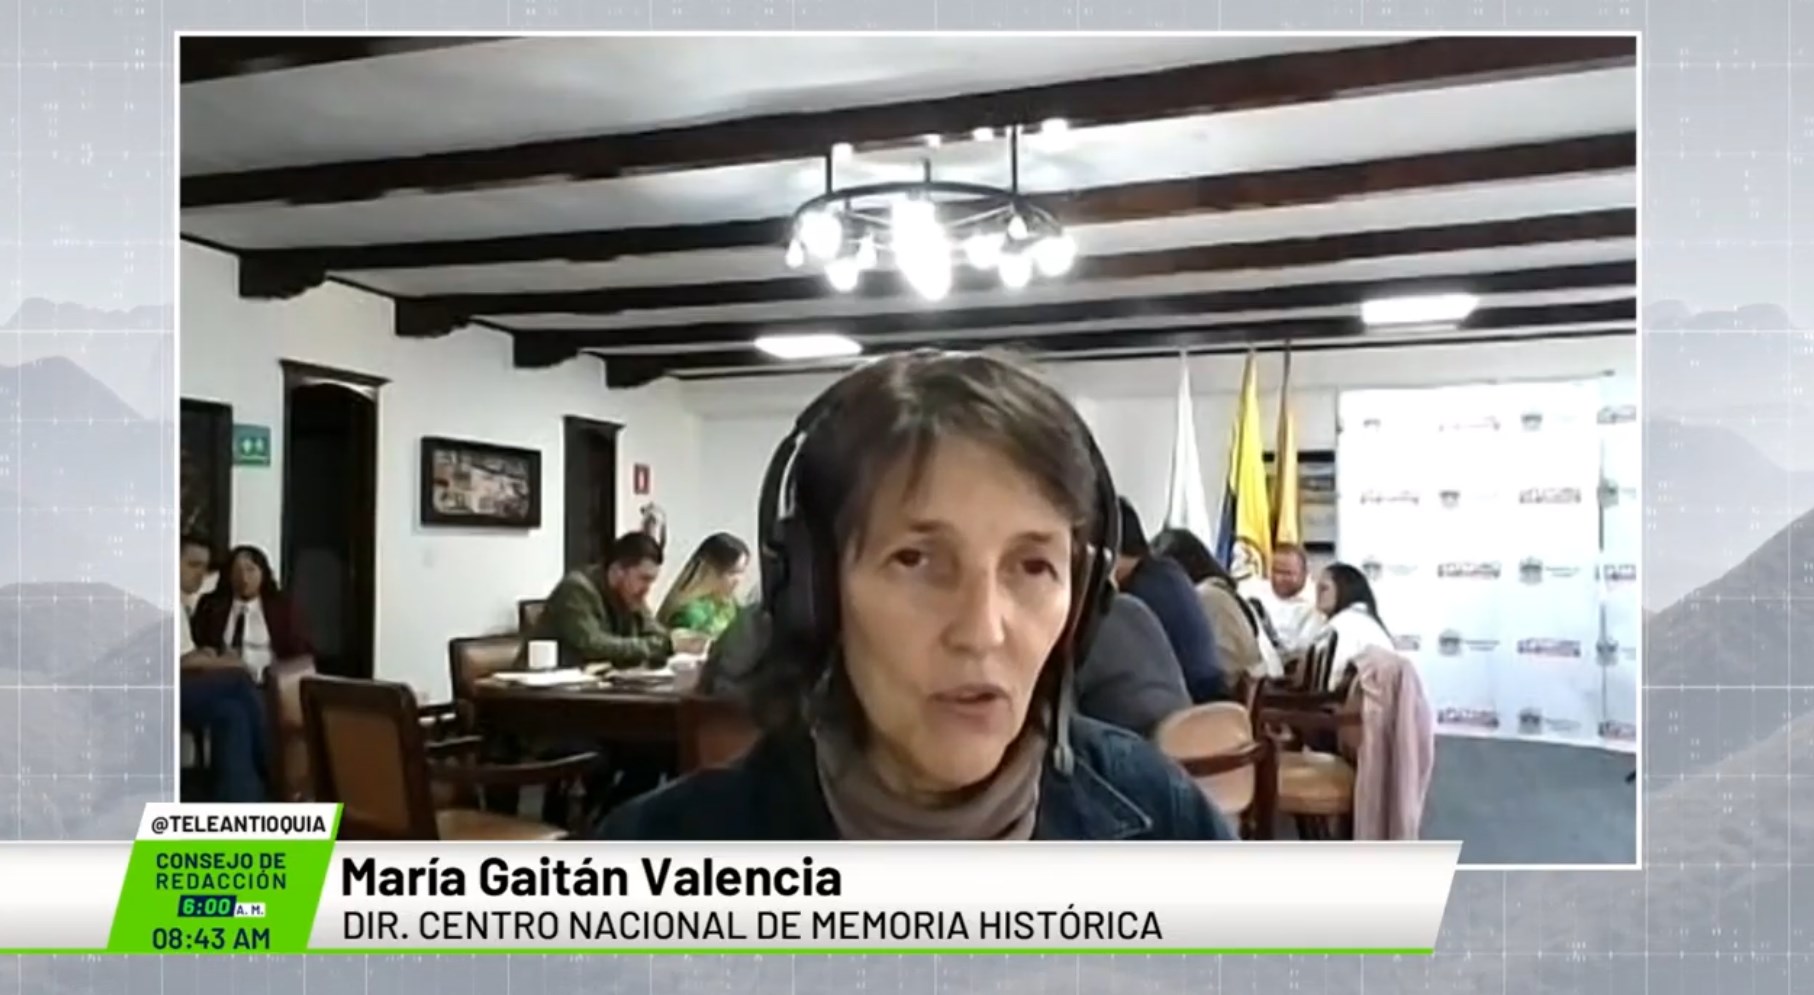 Entrevista a María Gaitán Valencia, dir. Centro Nacional de Memoria Histórica